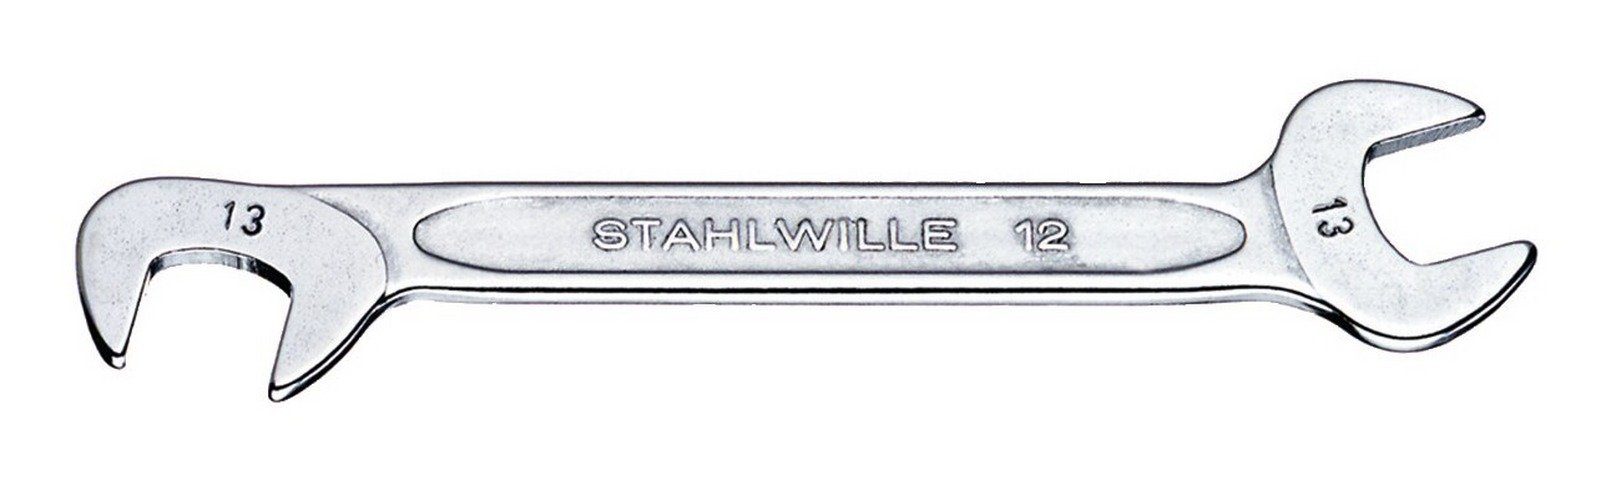 Stahlwille Maulschlüssel, Doppelmaulschlüssel klein 8 mm